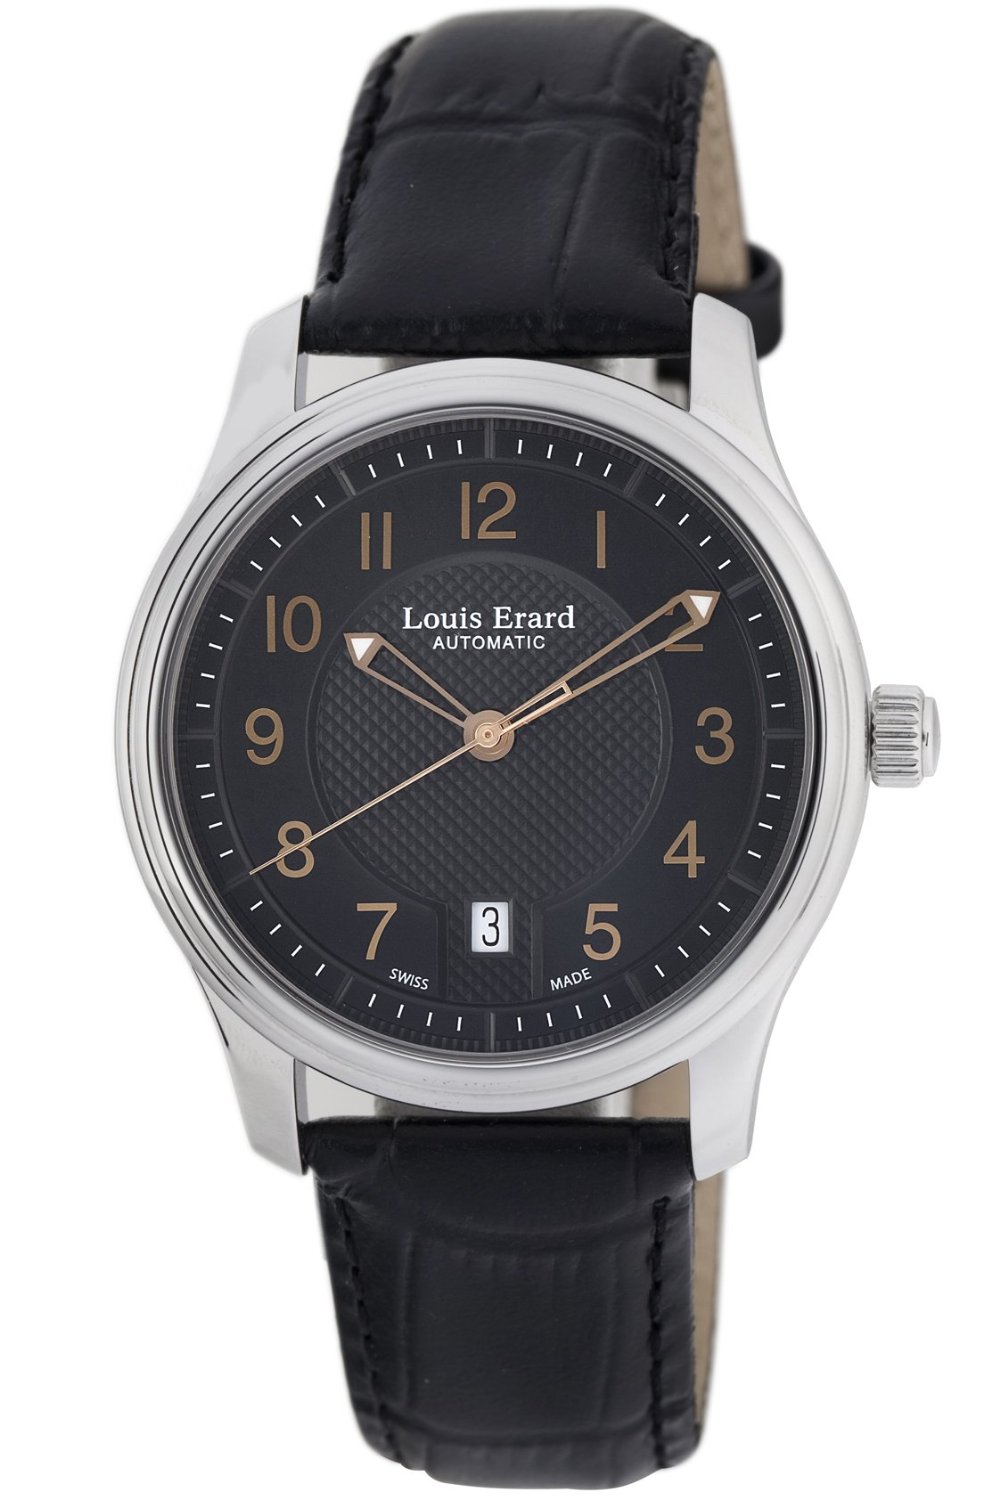 Louis Erard, Louis Erard Watches, Louis Erard 1931, Louis Erard Emotion, Louis Erard Heritage ...